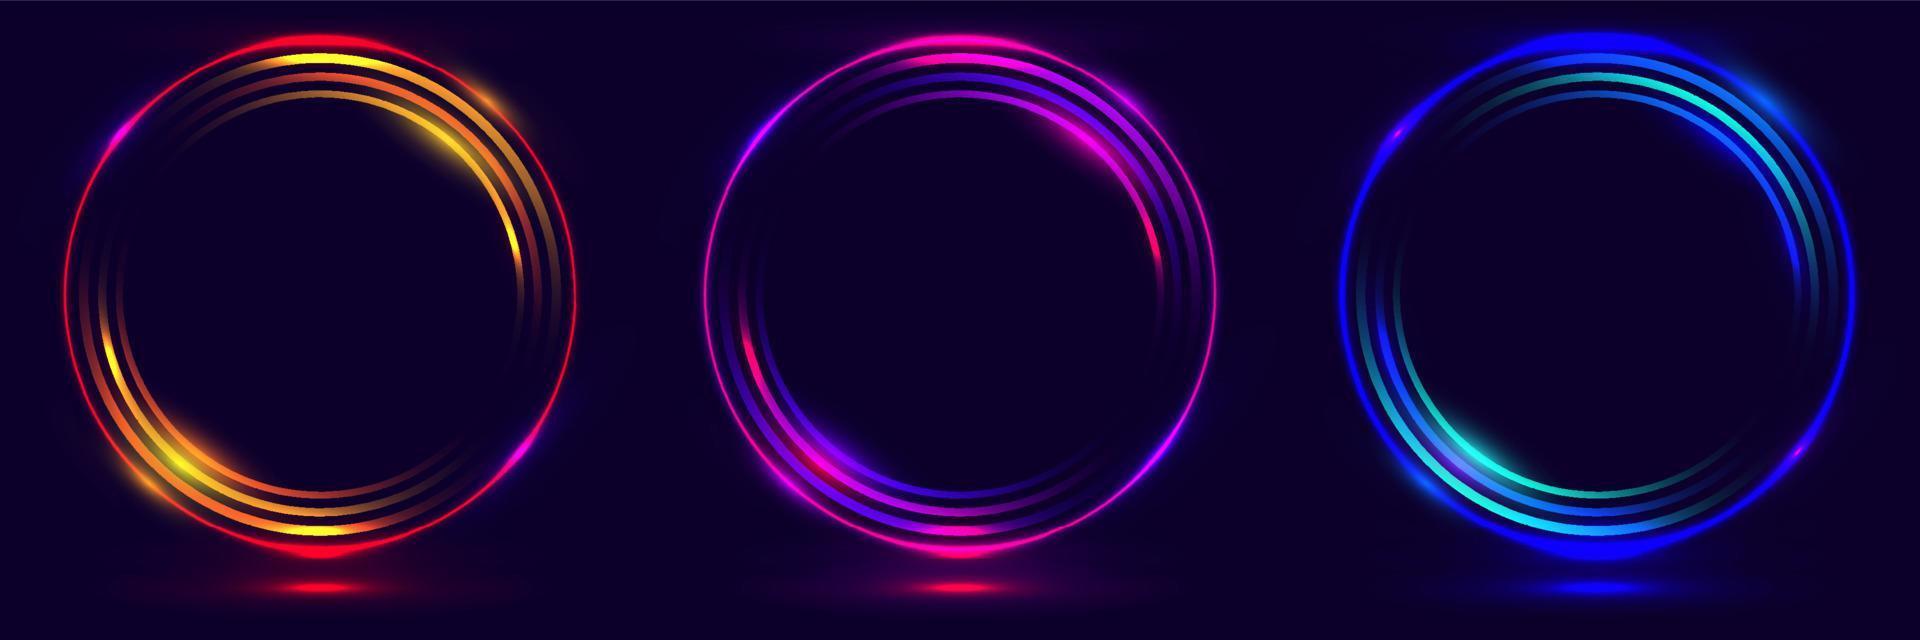 conjunto de círculos de cores neon brilhantes formas curvas redondas isoladas no conceito de tecnologia de fundo preto vetor